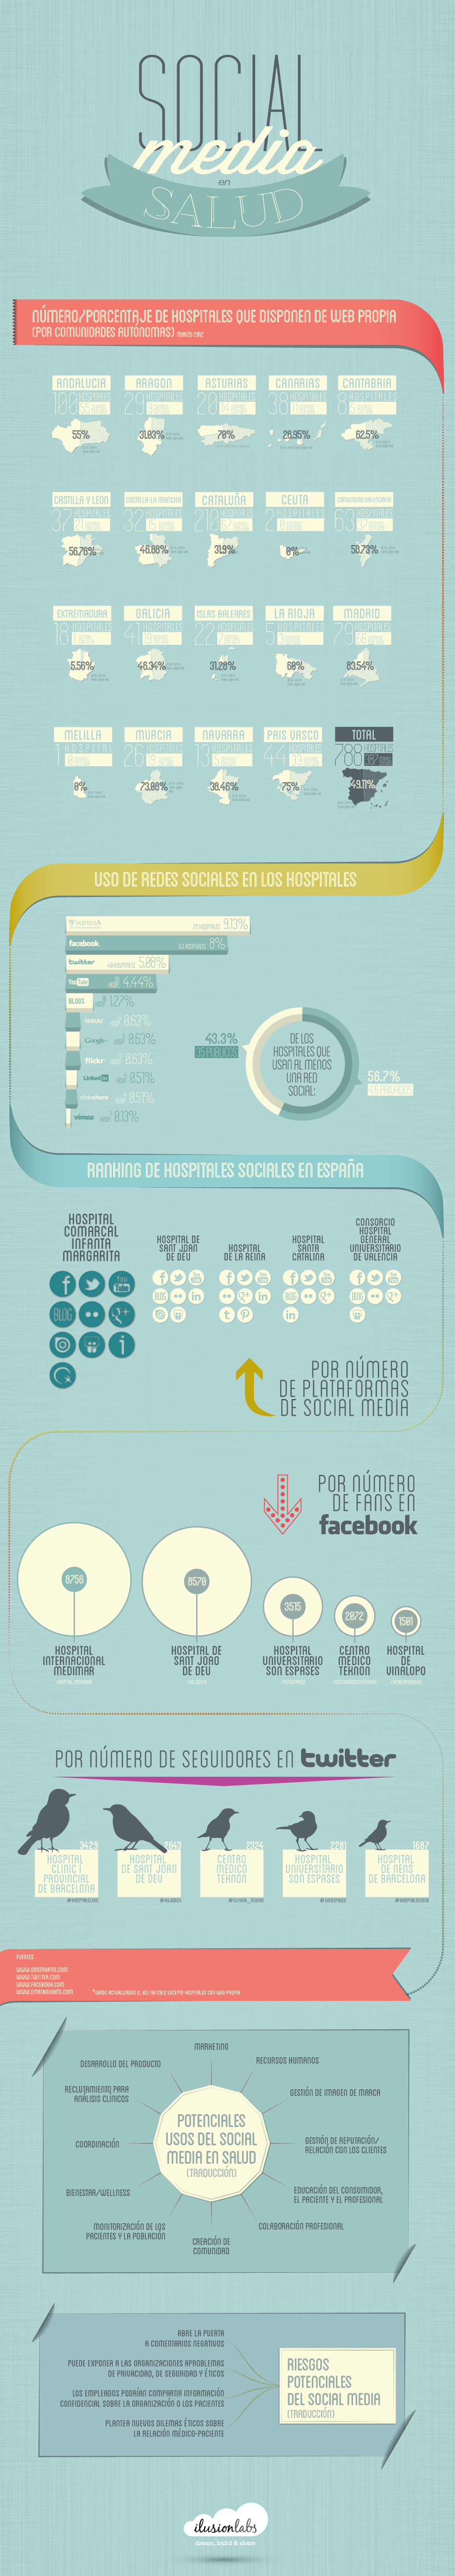 Redes sociales y salud en España